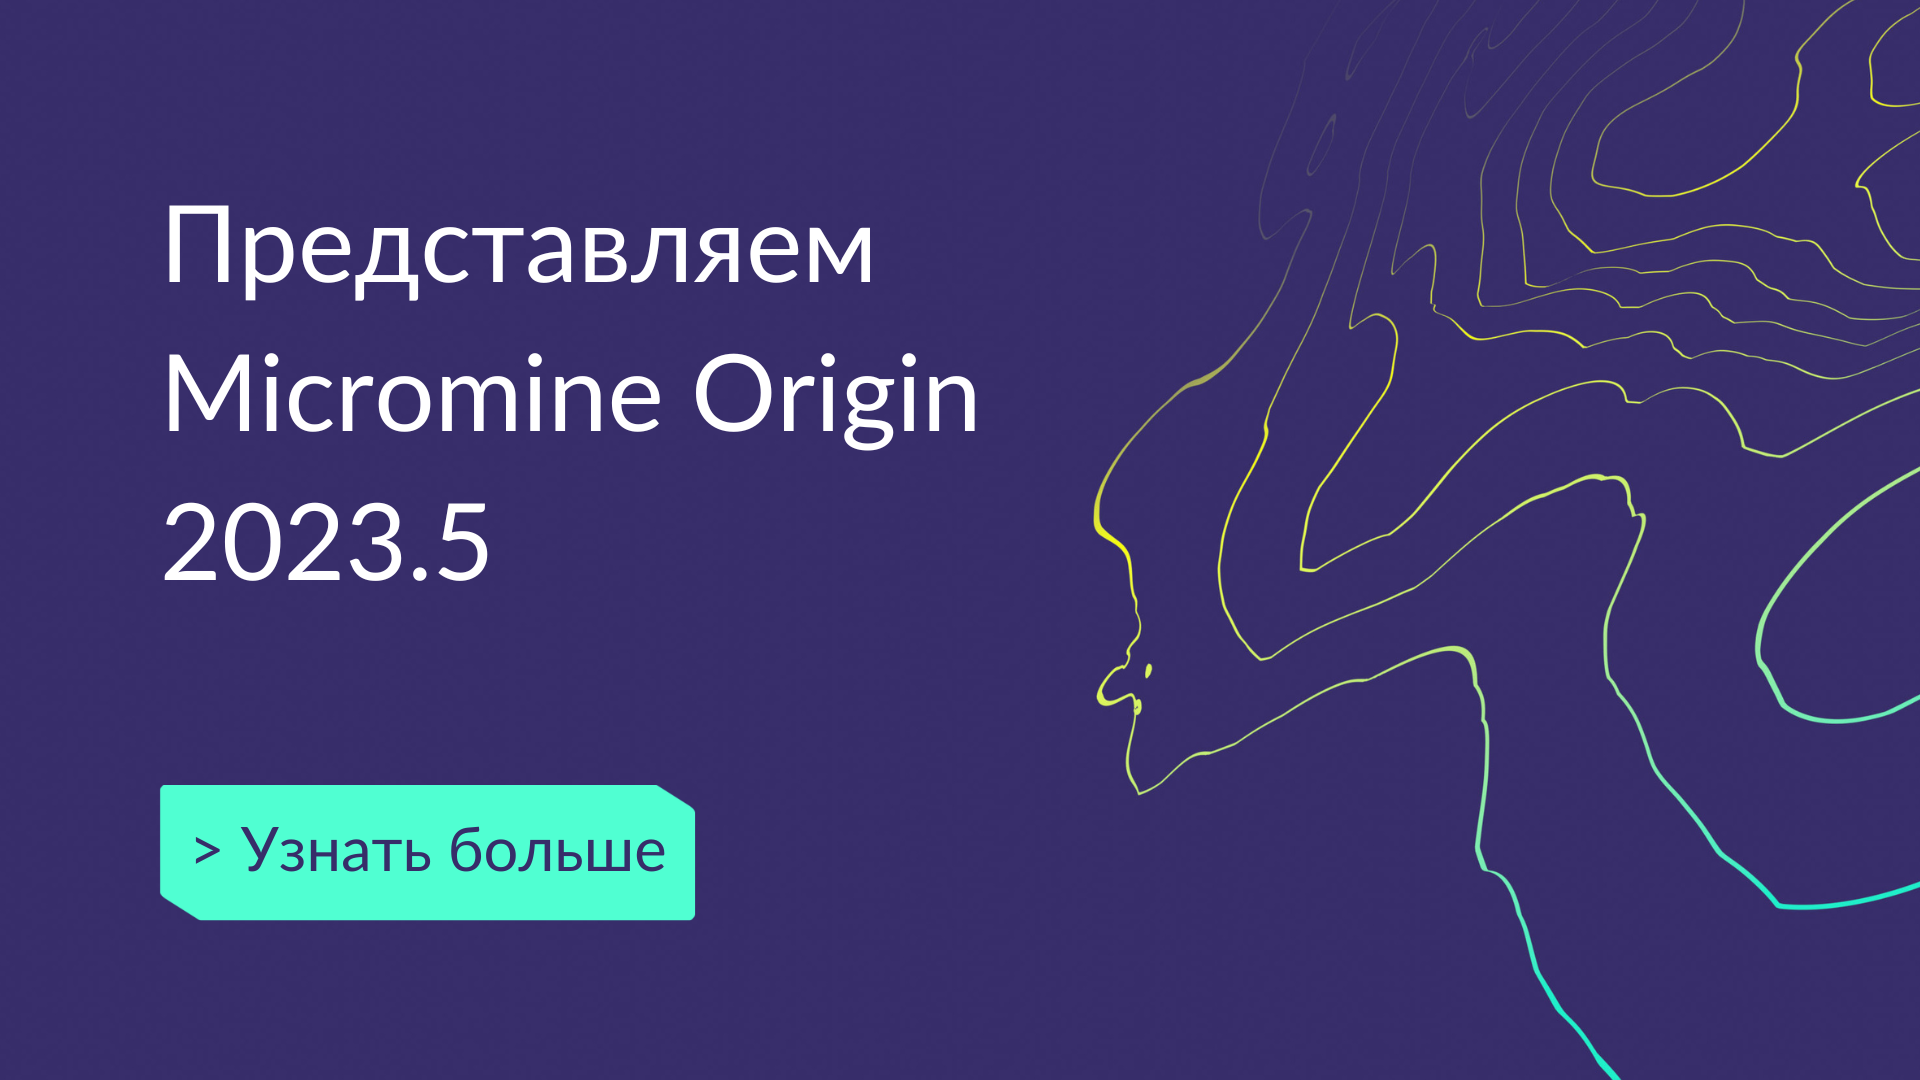 Выход новой версии Micromine Origin 2023.5 – Время для принятия уверенных решений.